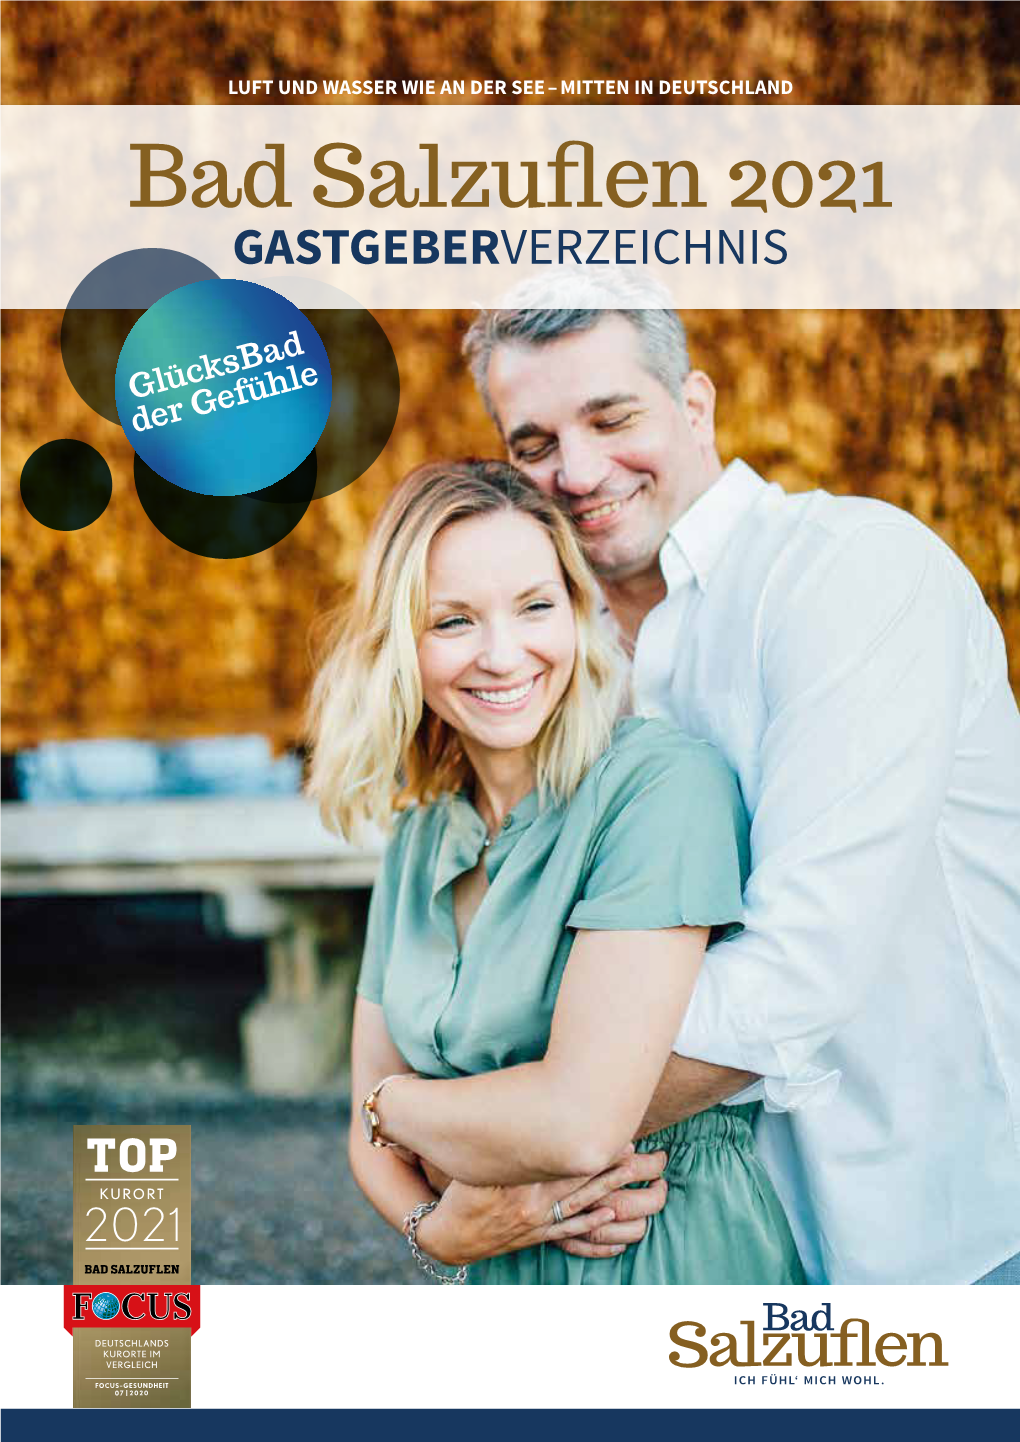 Bad Salzuflen 2021 GASTGEBERVERZEICHNIS Liebe Gäste